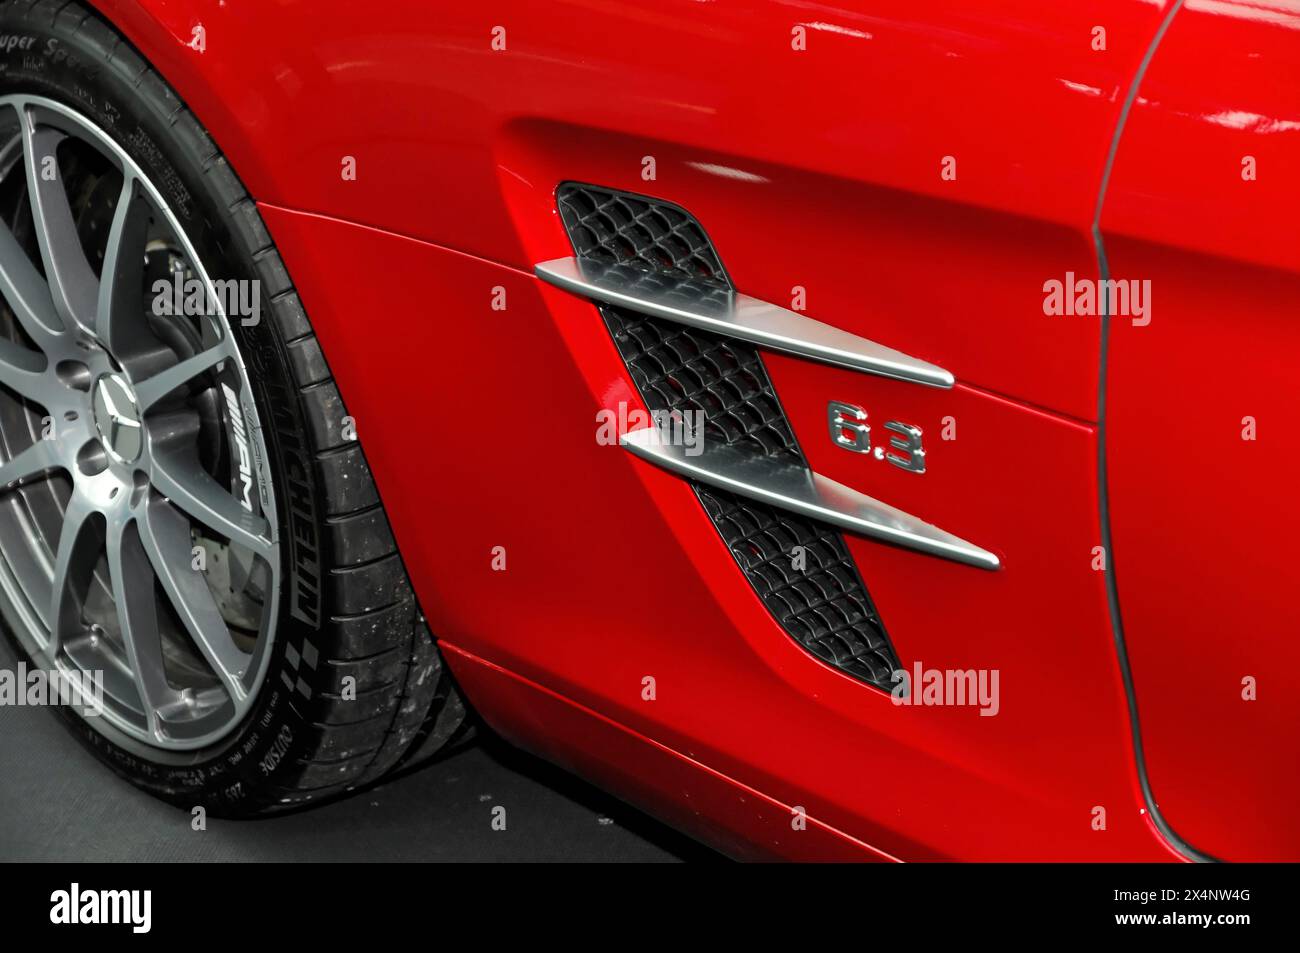 Vue détaillée de la ventilation latérale et de l'écusson d'une voiture de sport Mercedes-AMG 6,3 rouge, Stuttgart Messe, Stuttgart, Bade-Wuerttemberg, Allemagne Banque D'Images